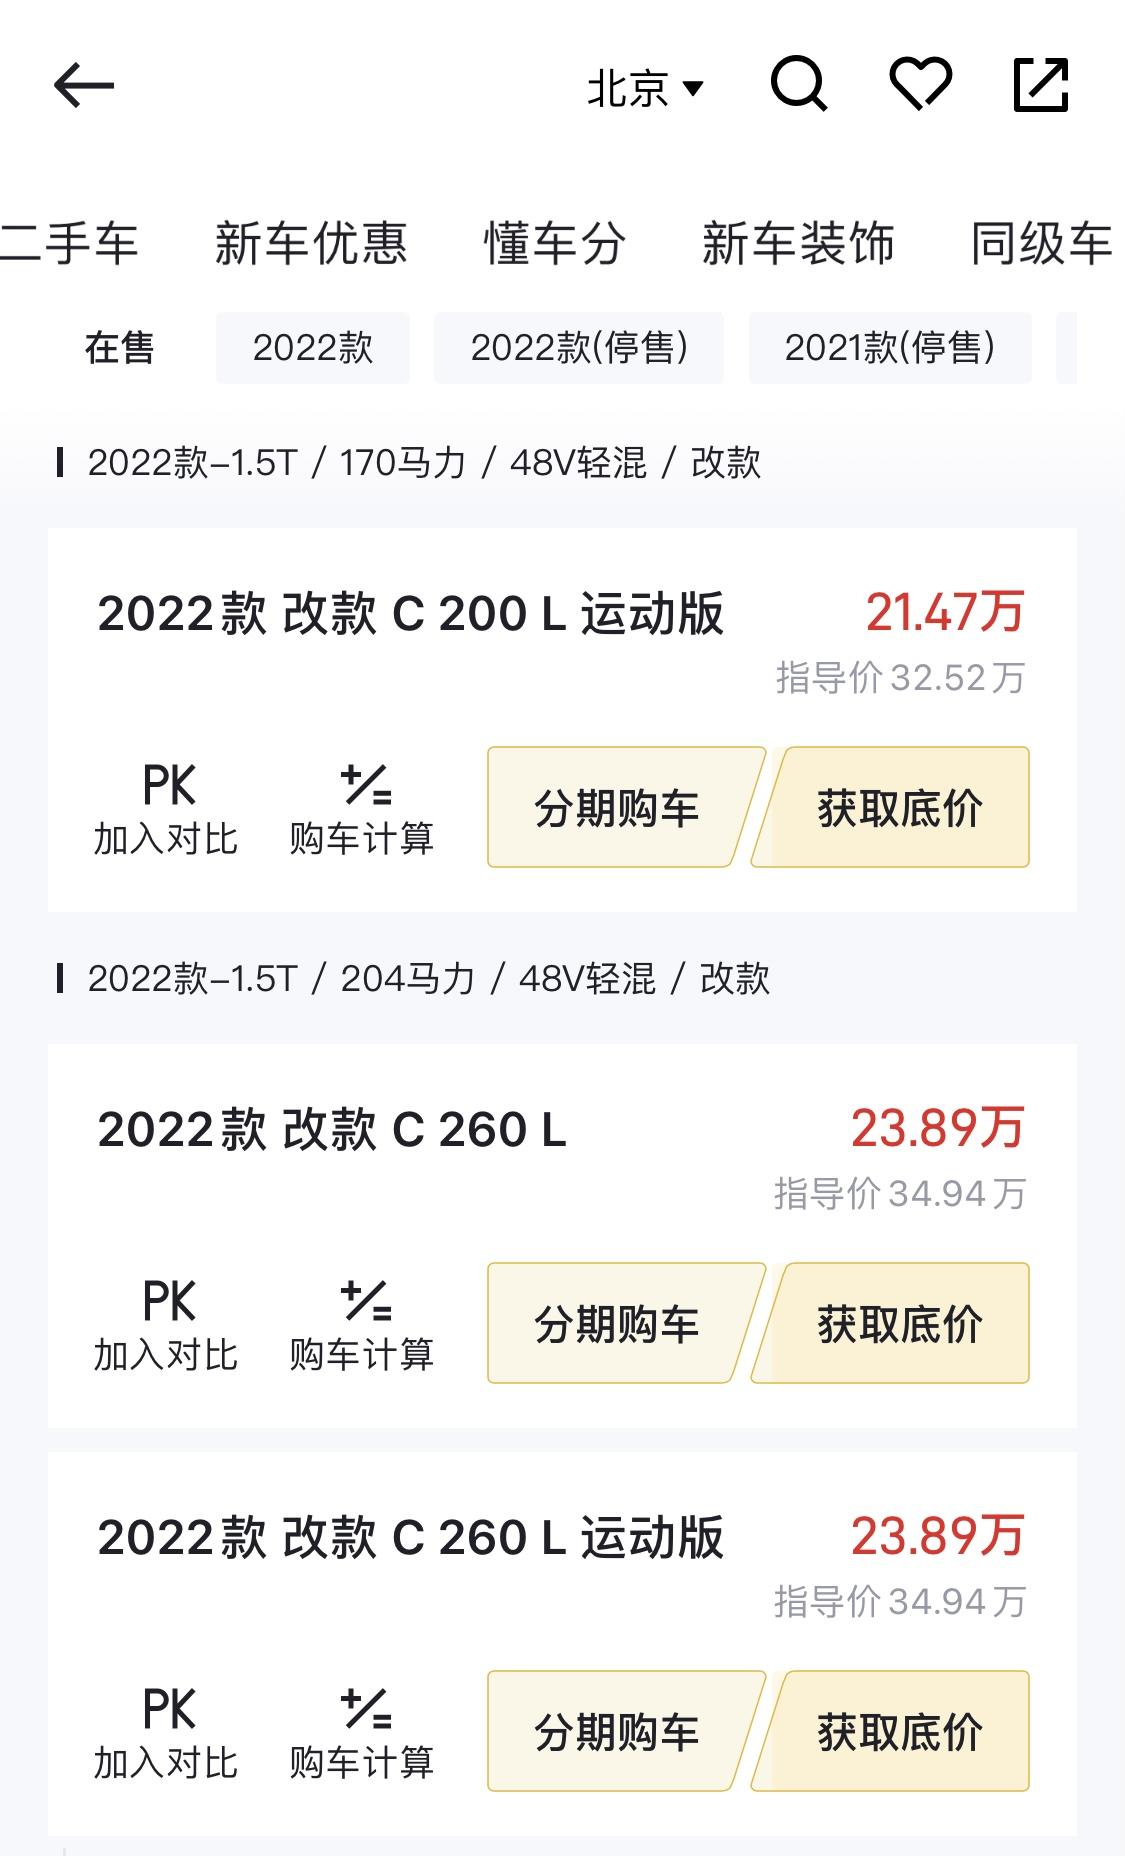 奔驰C级 为什么北京的奔驰便宜这么多？宝马反而又贵了？看图c级北京比徐州便宜了7万多，而宝马5系又贵出来5万多。。